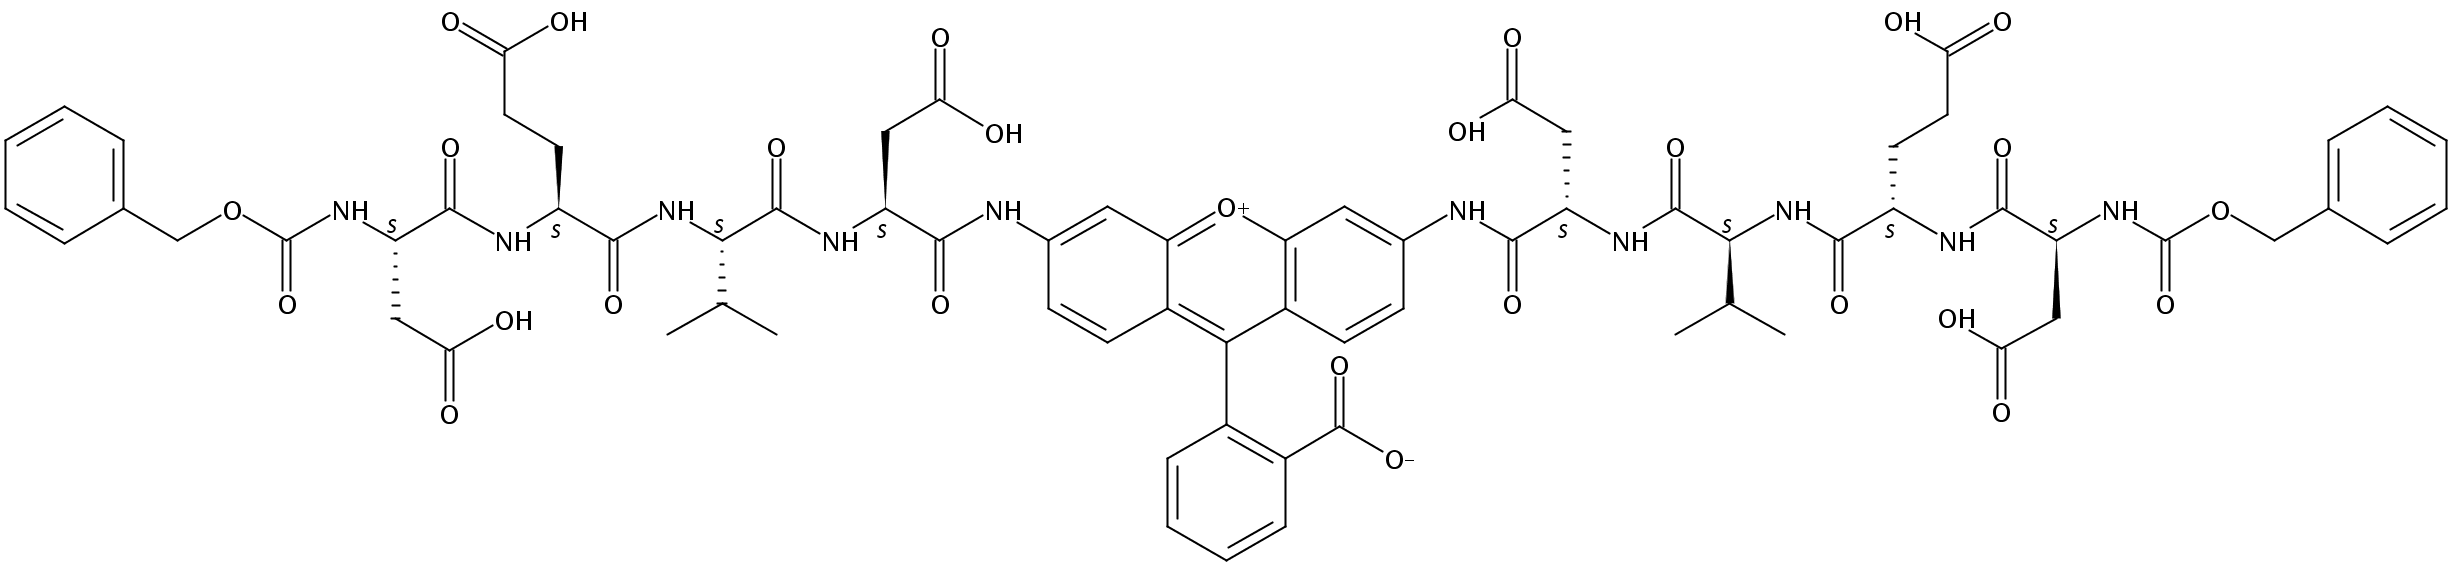 (Z-ASP-GLU-VAL-ASP)2-RHODAMINE 110